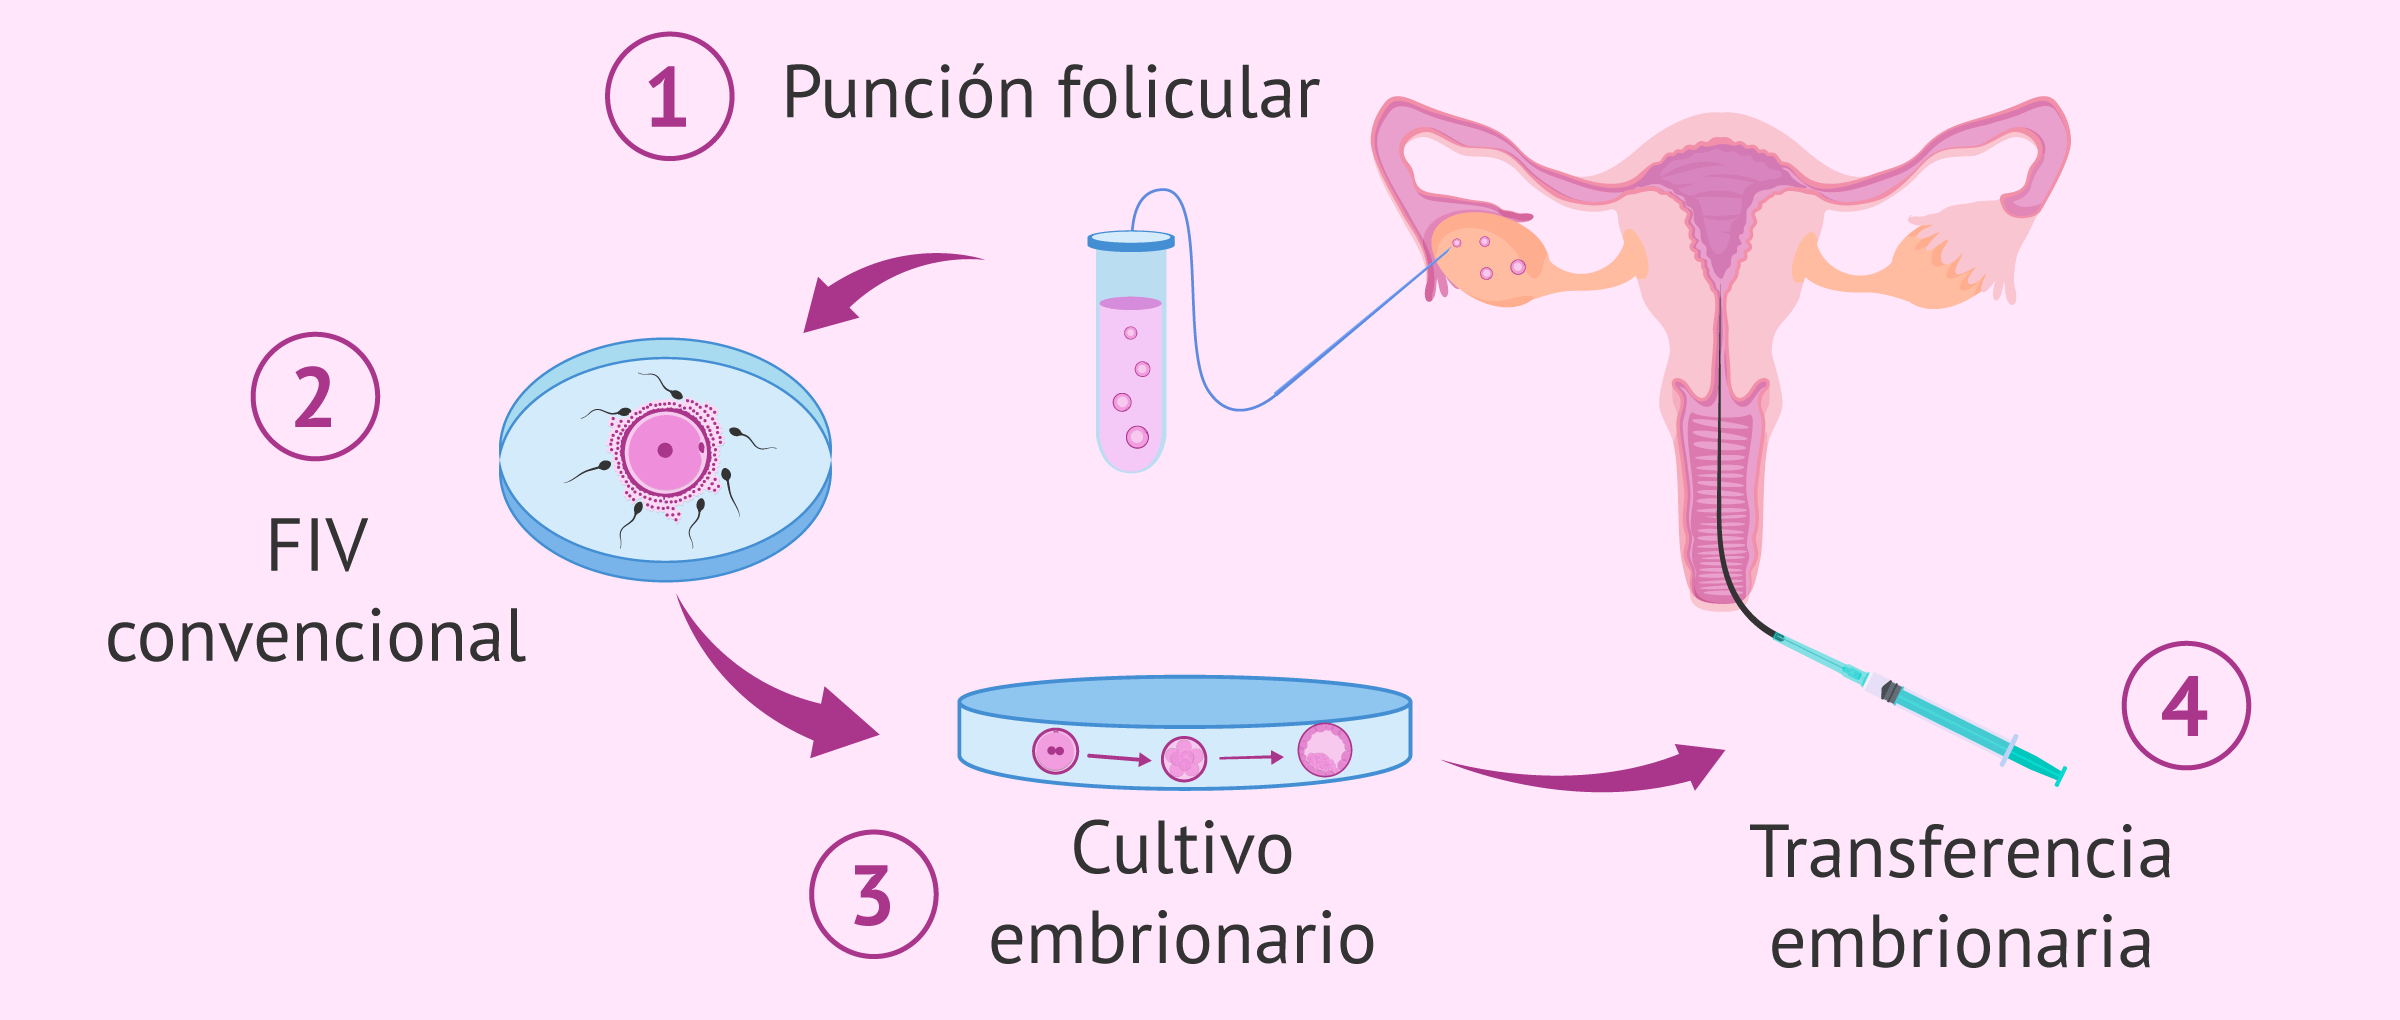 Fecundación in vitro convencional